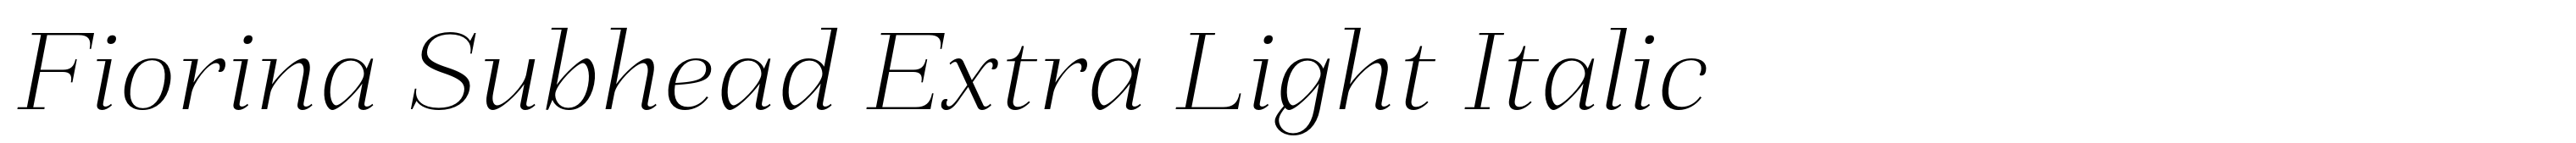 Fiorina Subhead Extra Light Italic